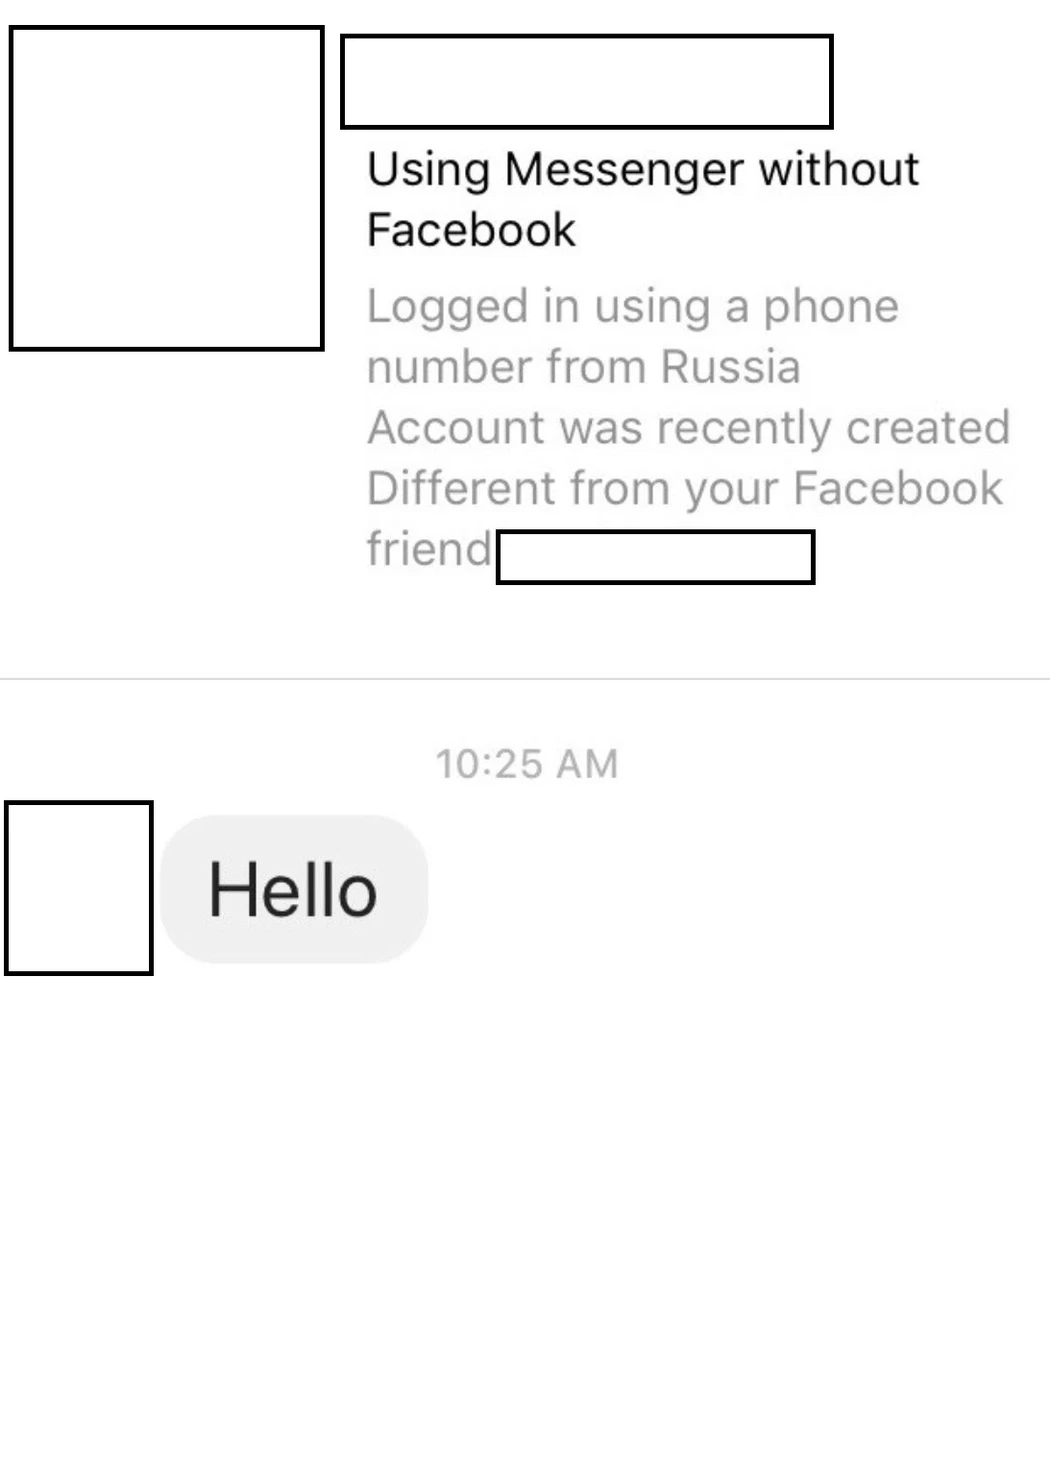 facebook messenger new feature